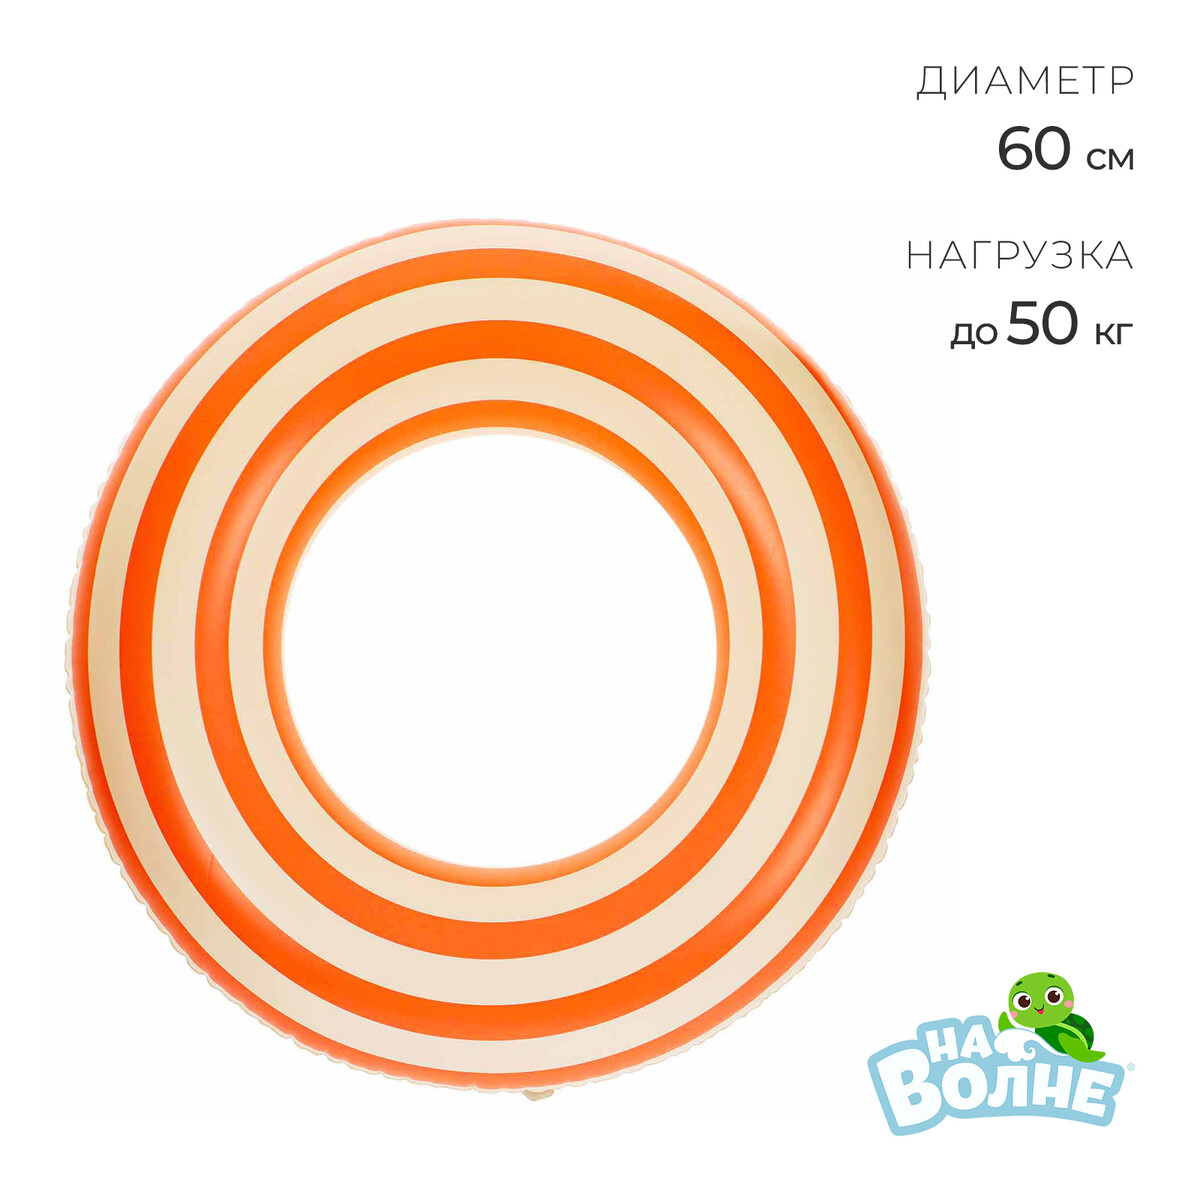 Круг для плавания 60 см, цвет белый/оранжевый нарукавники для плавания china dans самонакатыши оранжевый